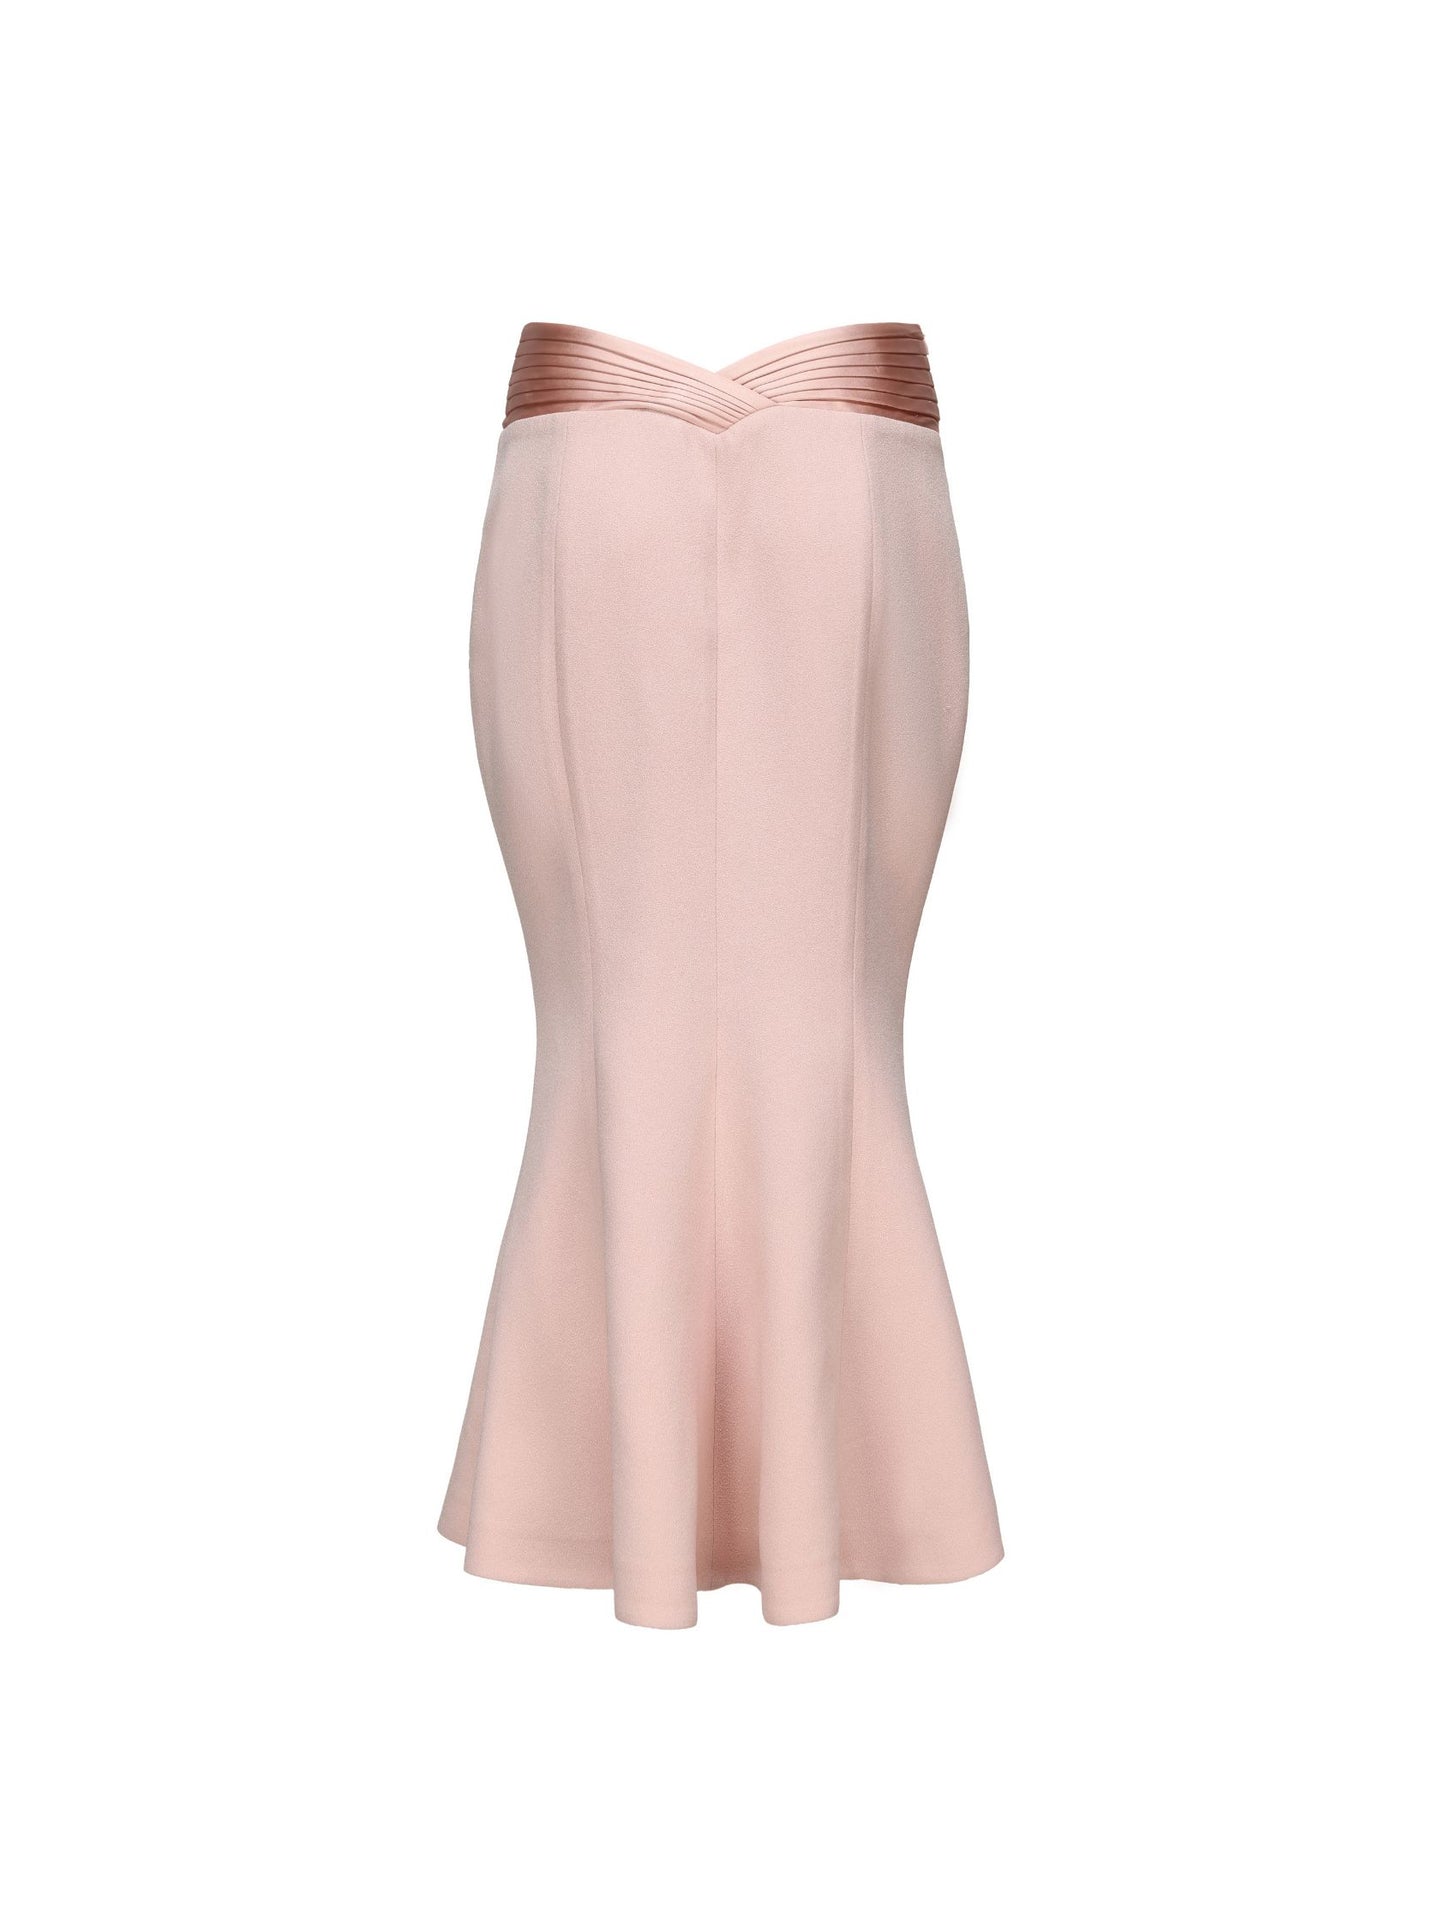 Belle Satin Skirt (Light Pink)